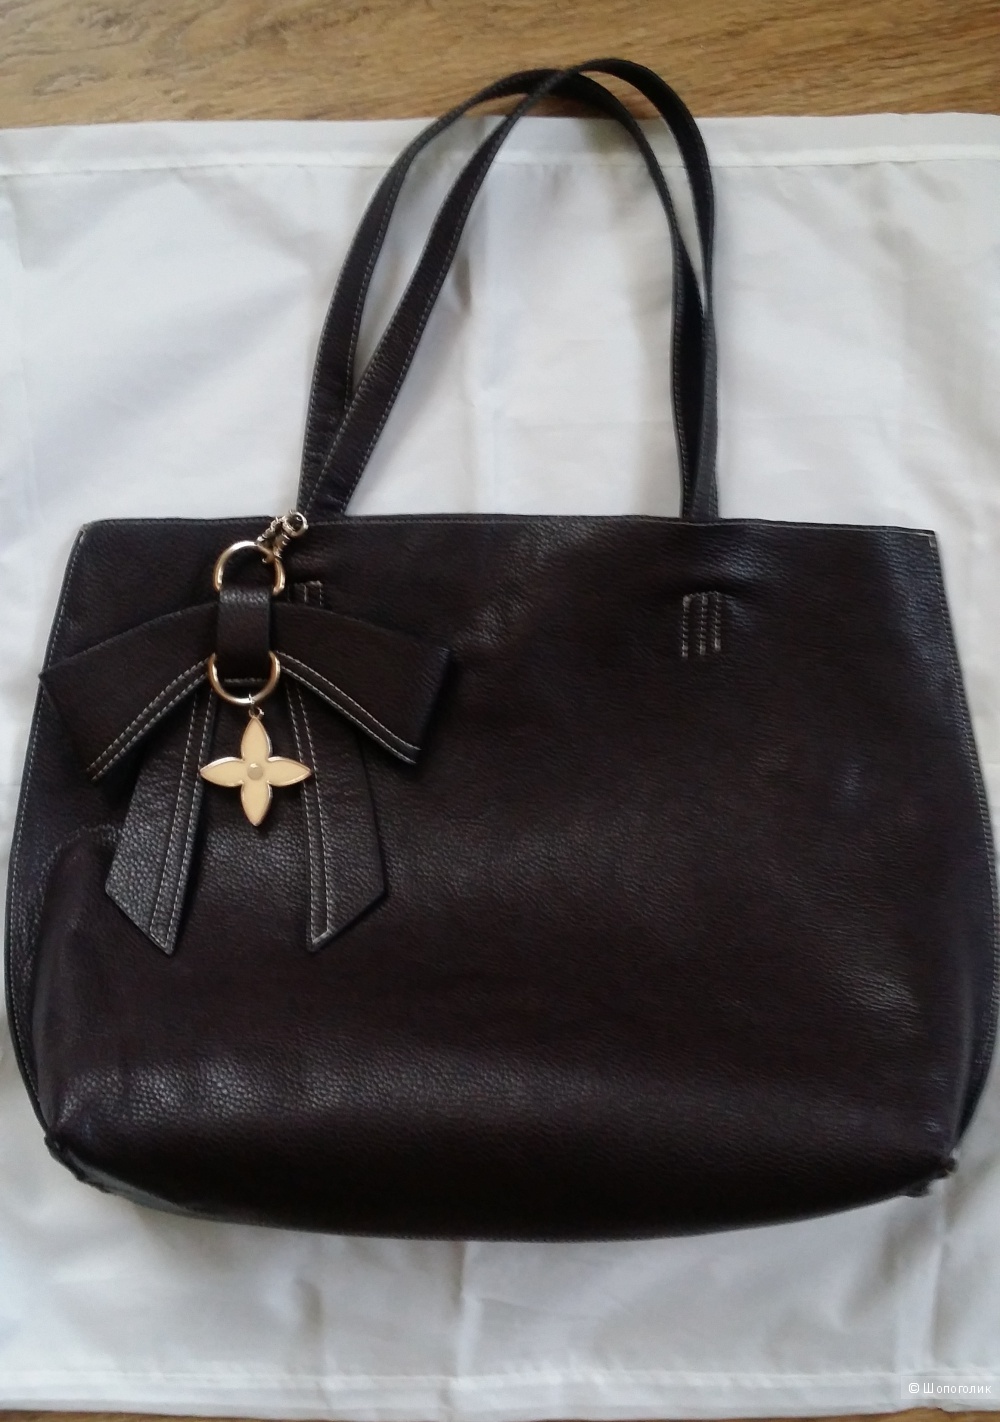 Комплект из двух сумок британской фирмы  Accessorize шоколадного цвета.